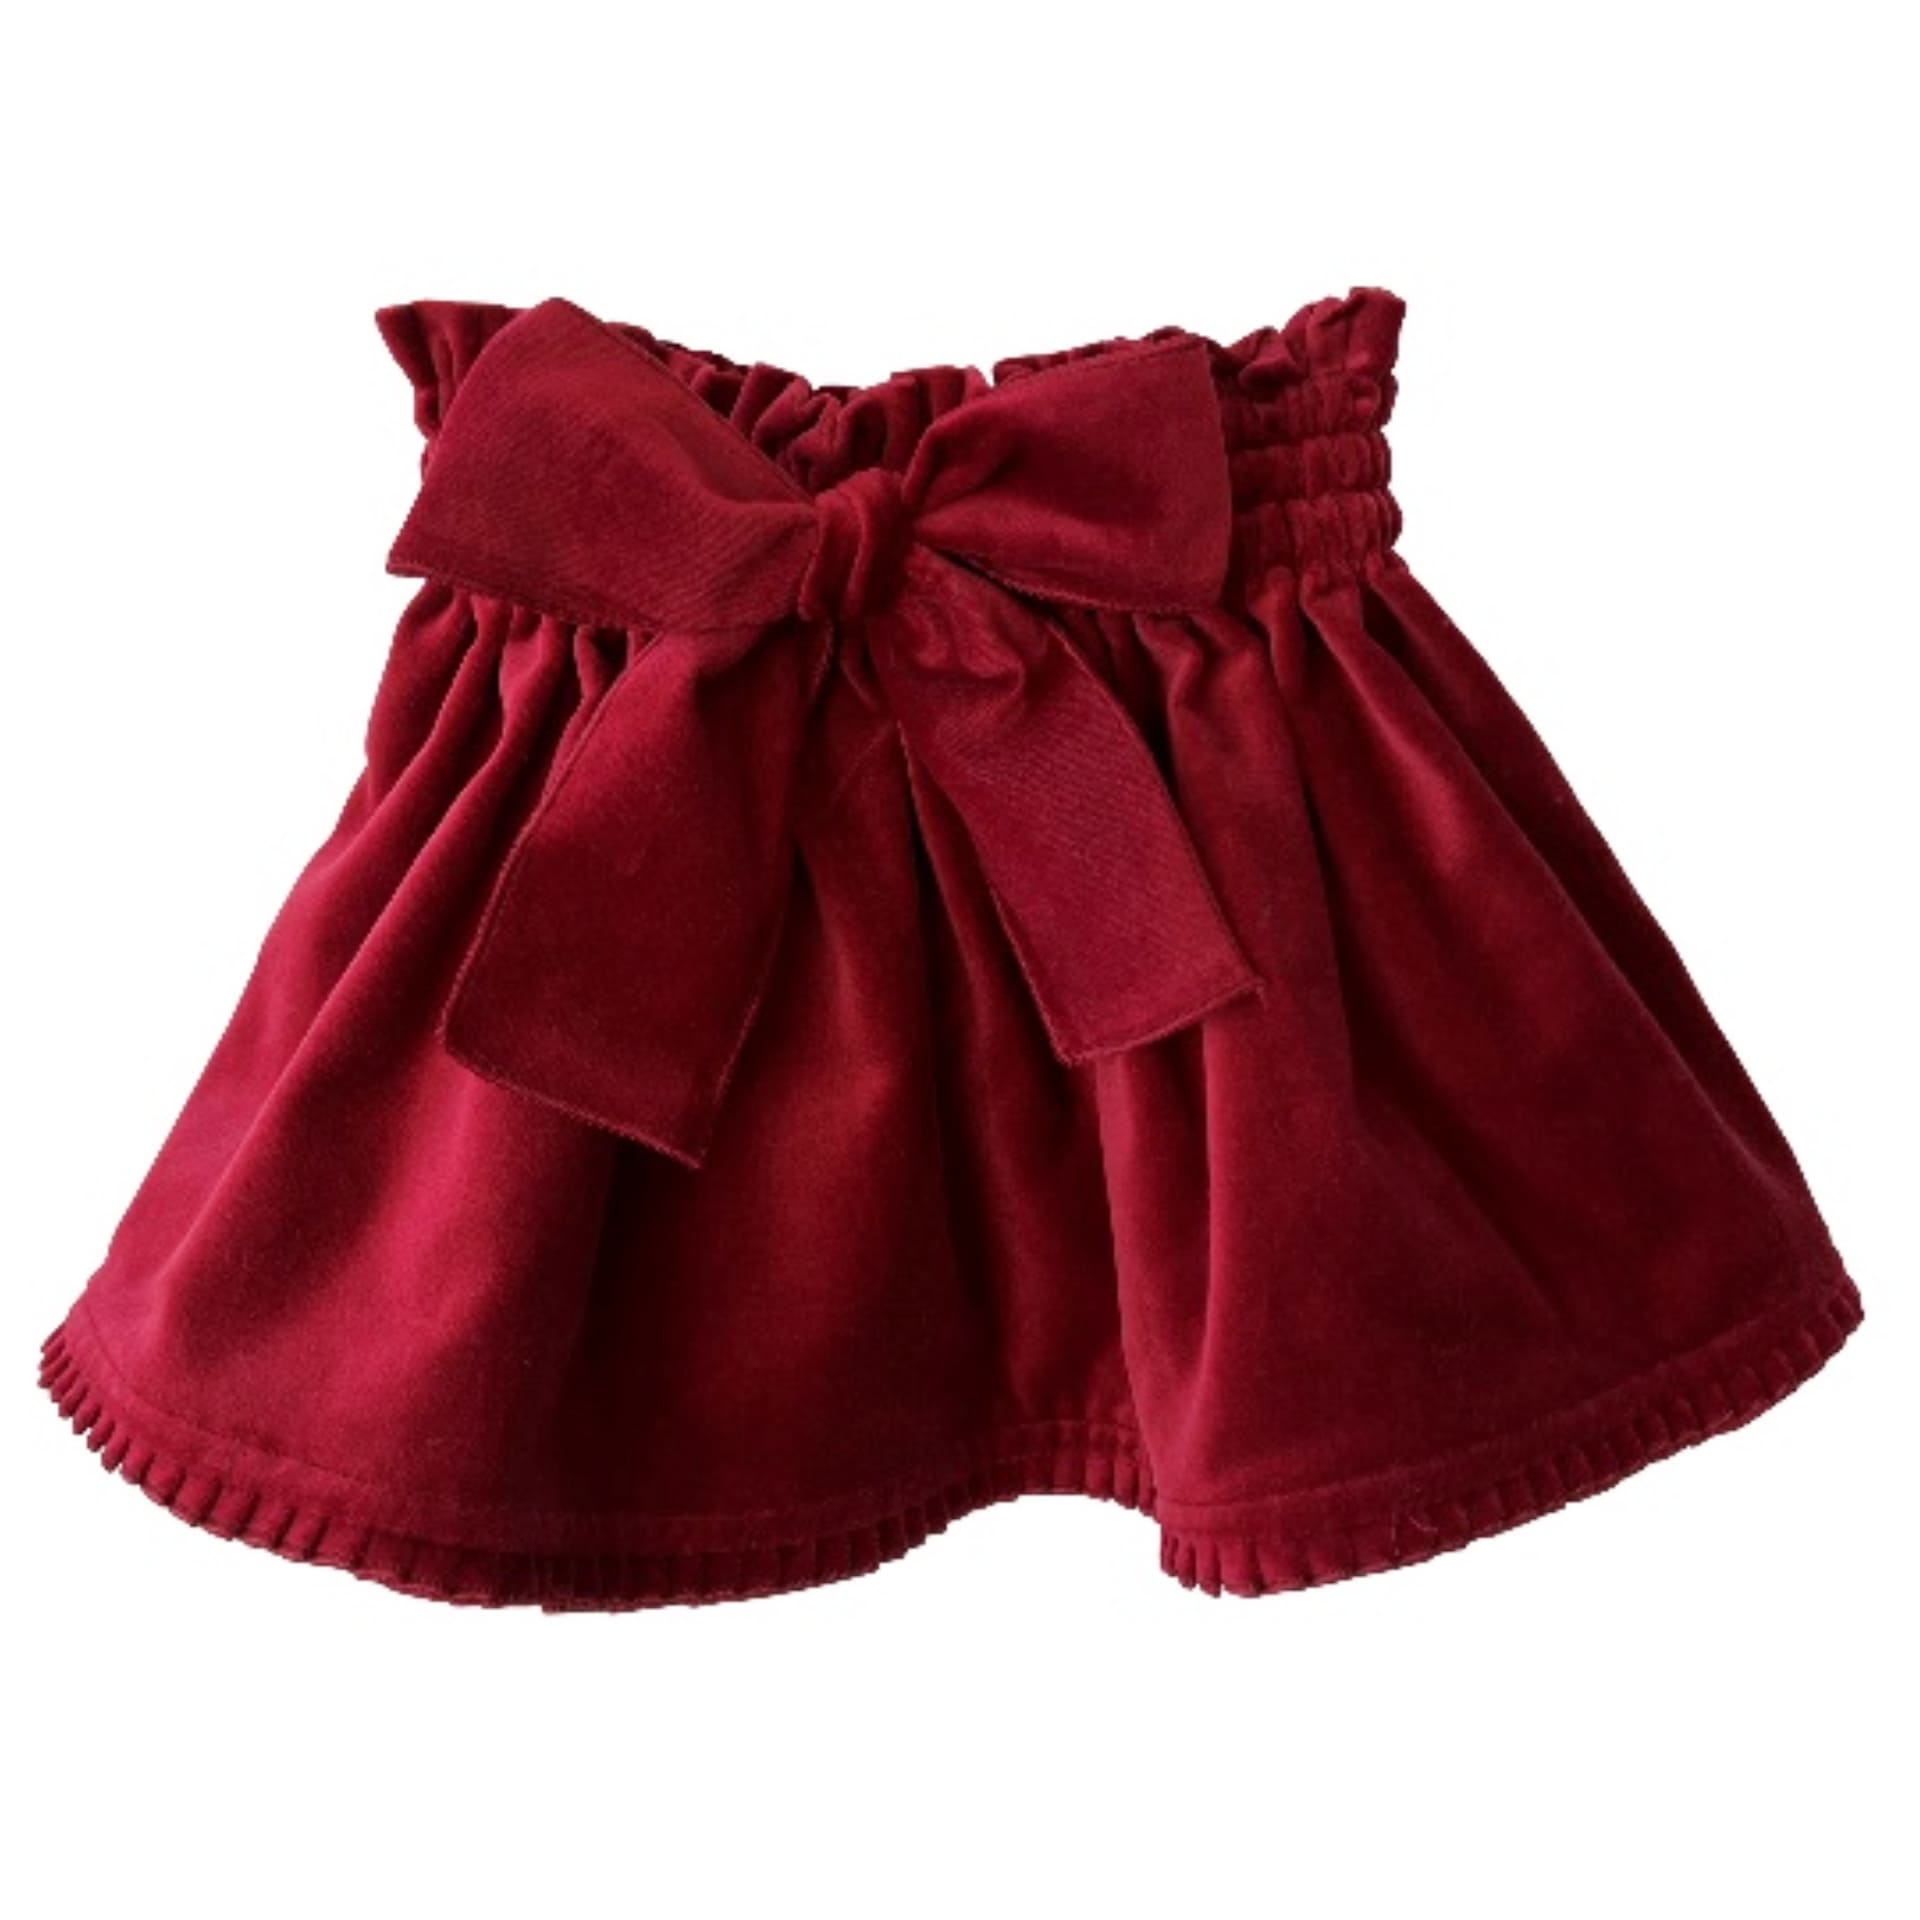 Bordeaux velvet pleated trim skirt